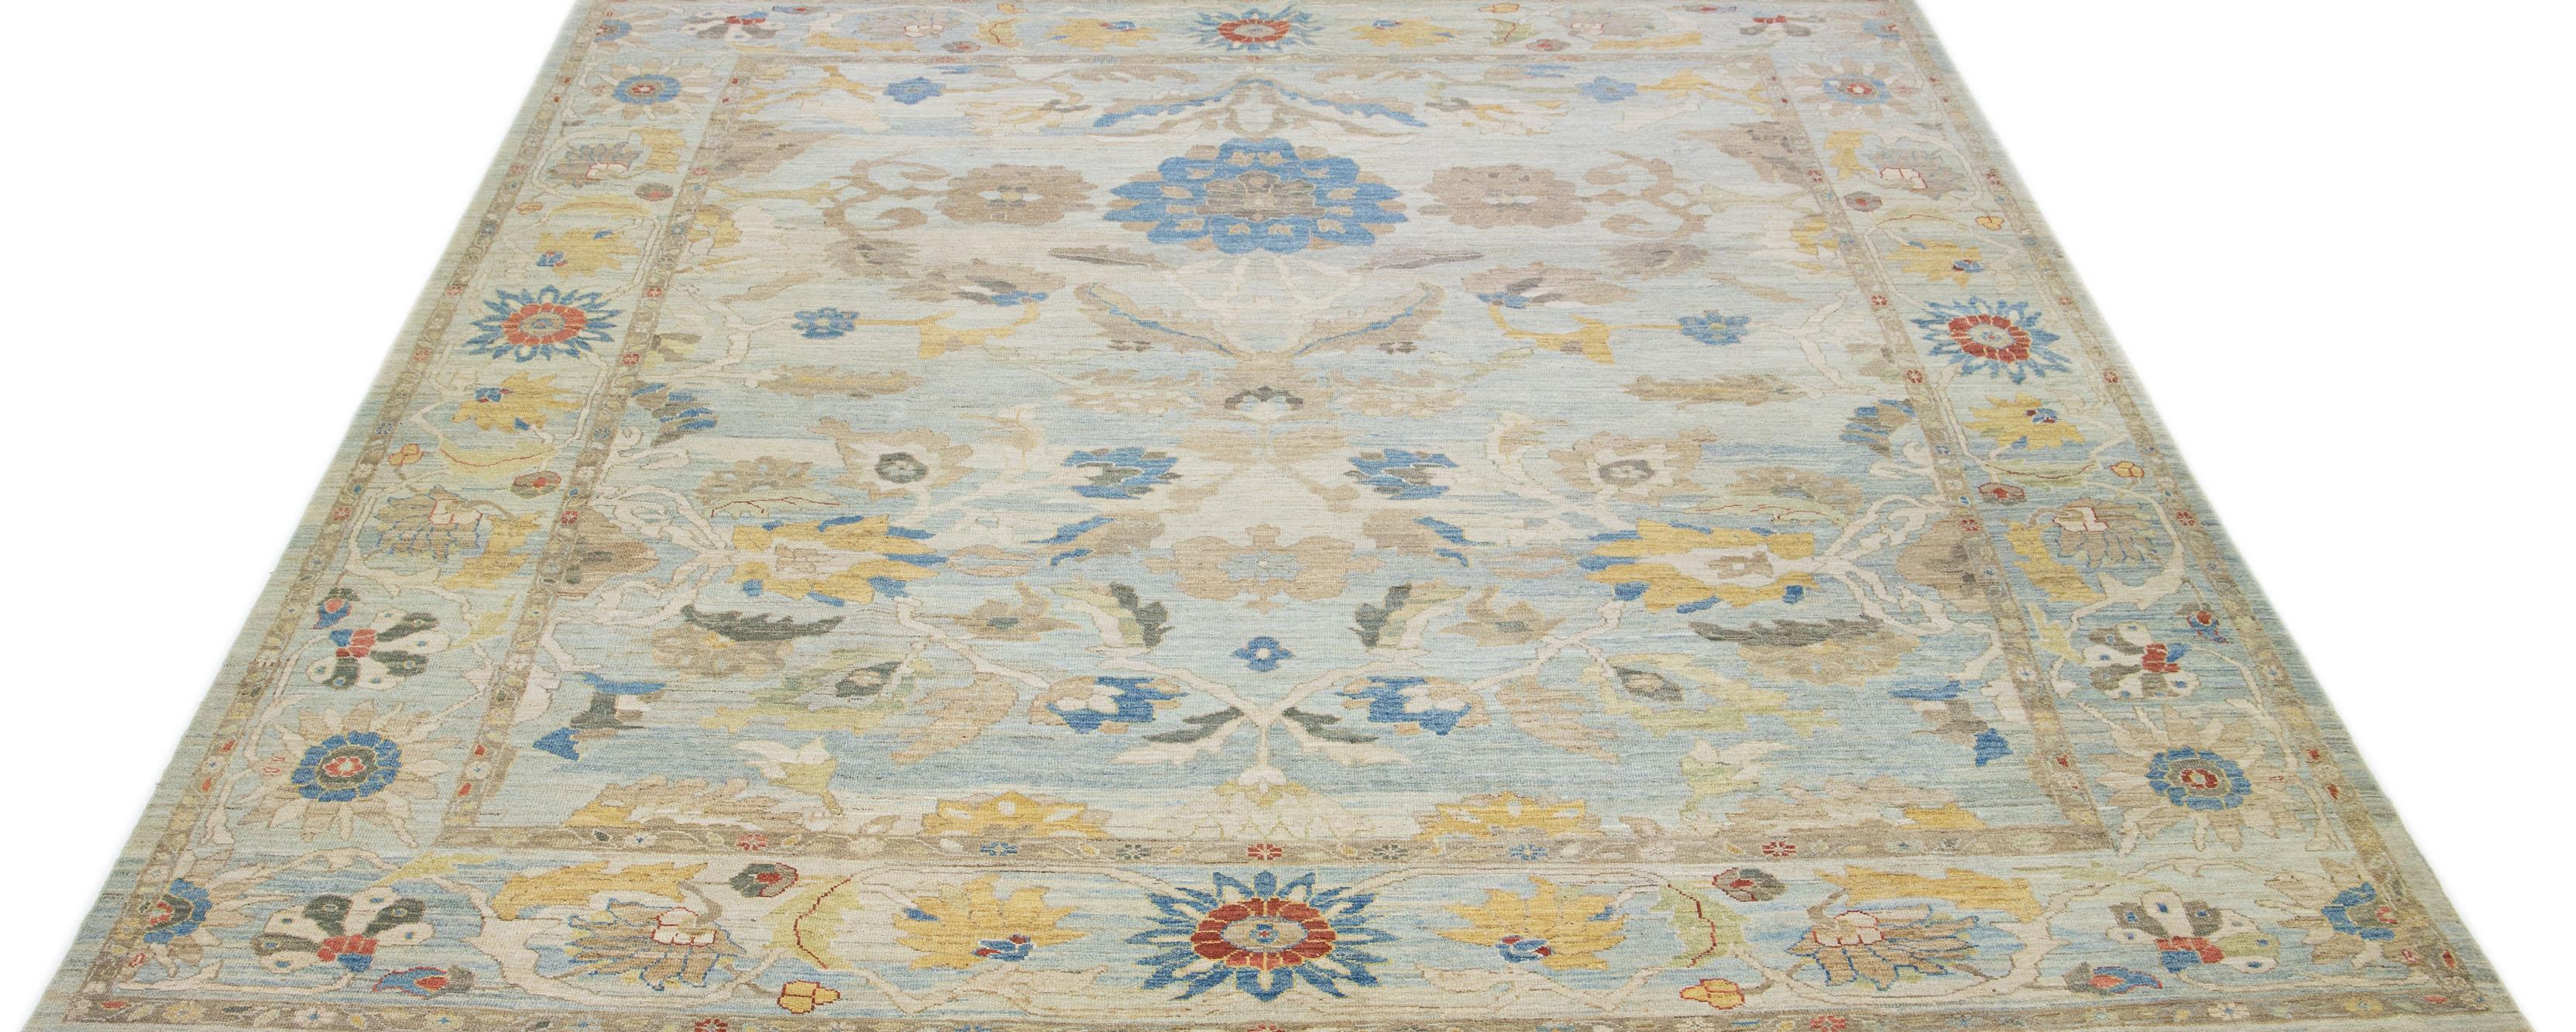 Diese zeitgenössische Interpretation des traditionellen Sultanabad-Stils wird in einem exquisiten, handgeknüpften Wollteppich mit auffallend hellblauer Farbe präsentiert. Ein aufwendig gestalteter Rahmen hebt das florale Motiv hervor, das mit